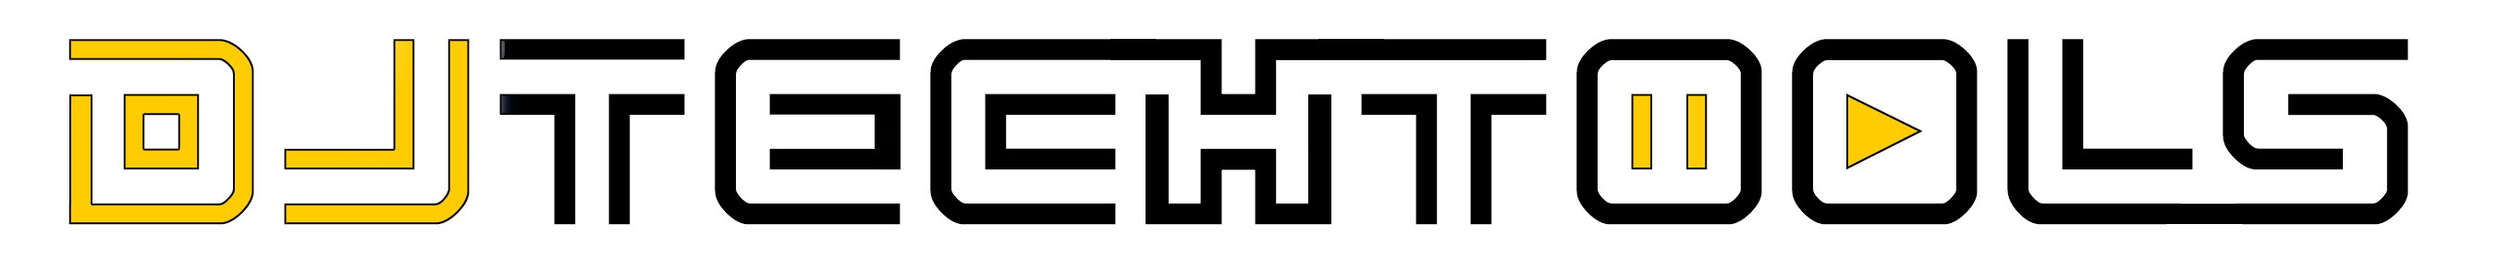 djtechtools-logo-wht.jpg